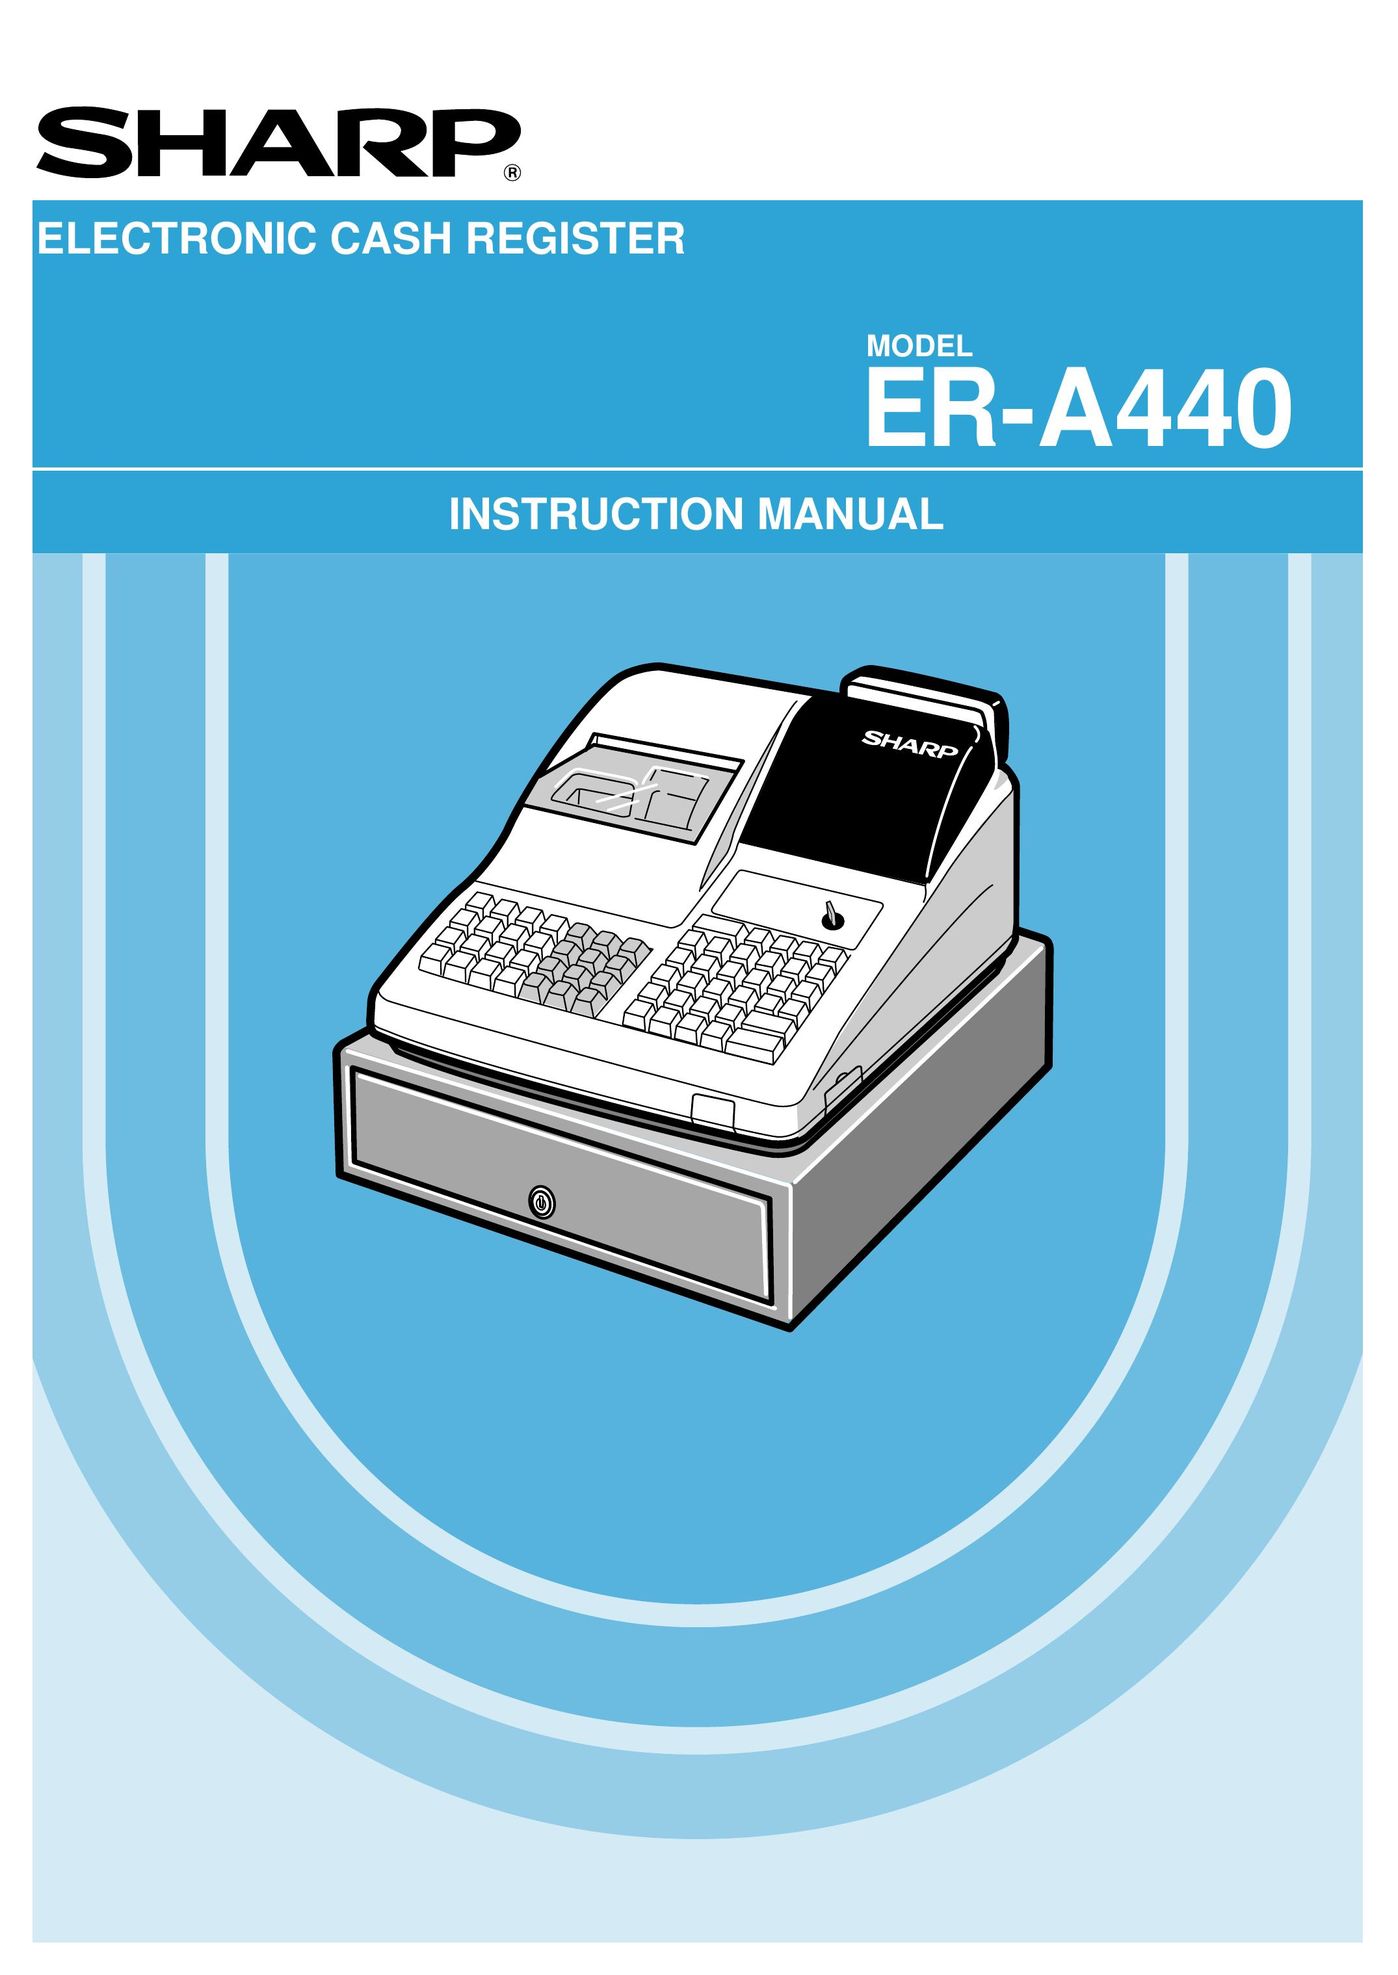 Sharp ER-A440 Cash Register User Manual